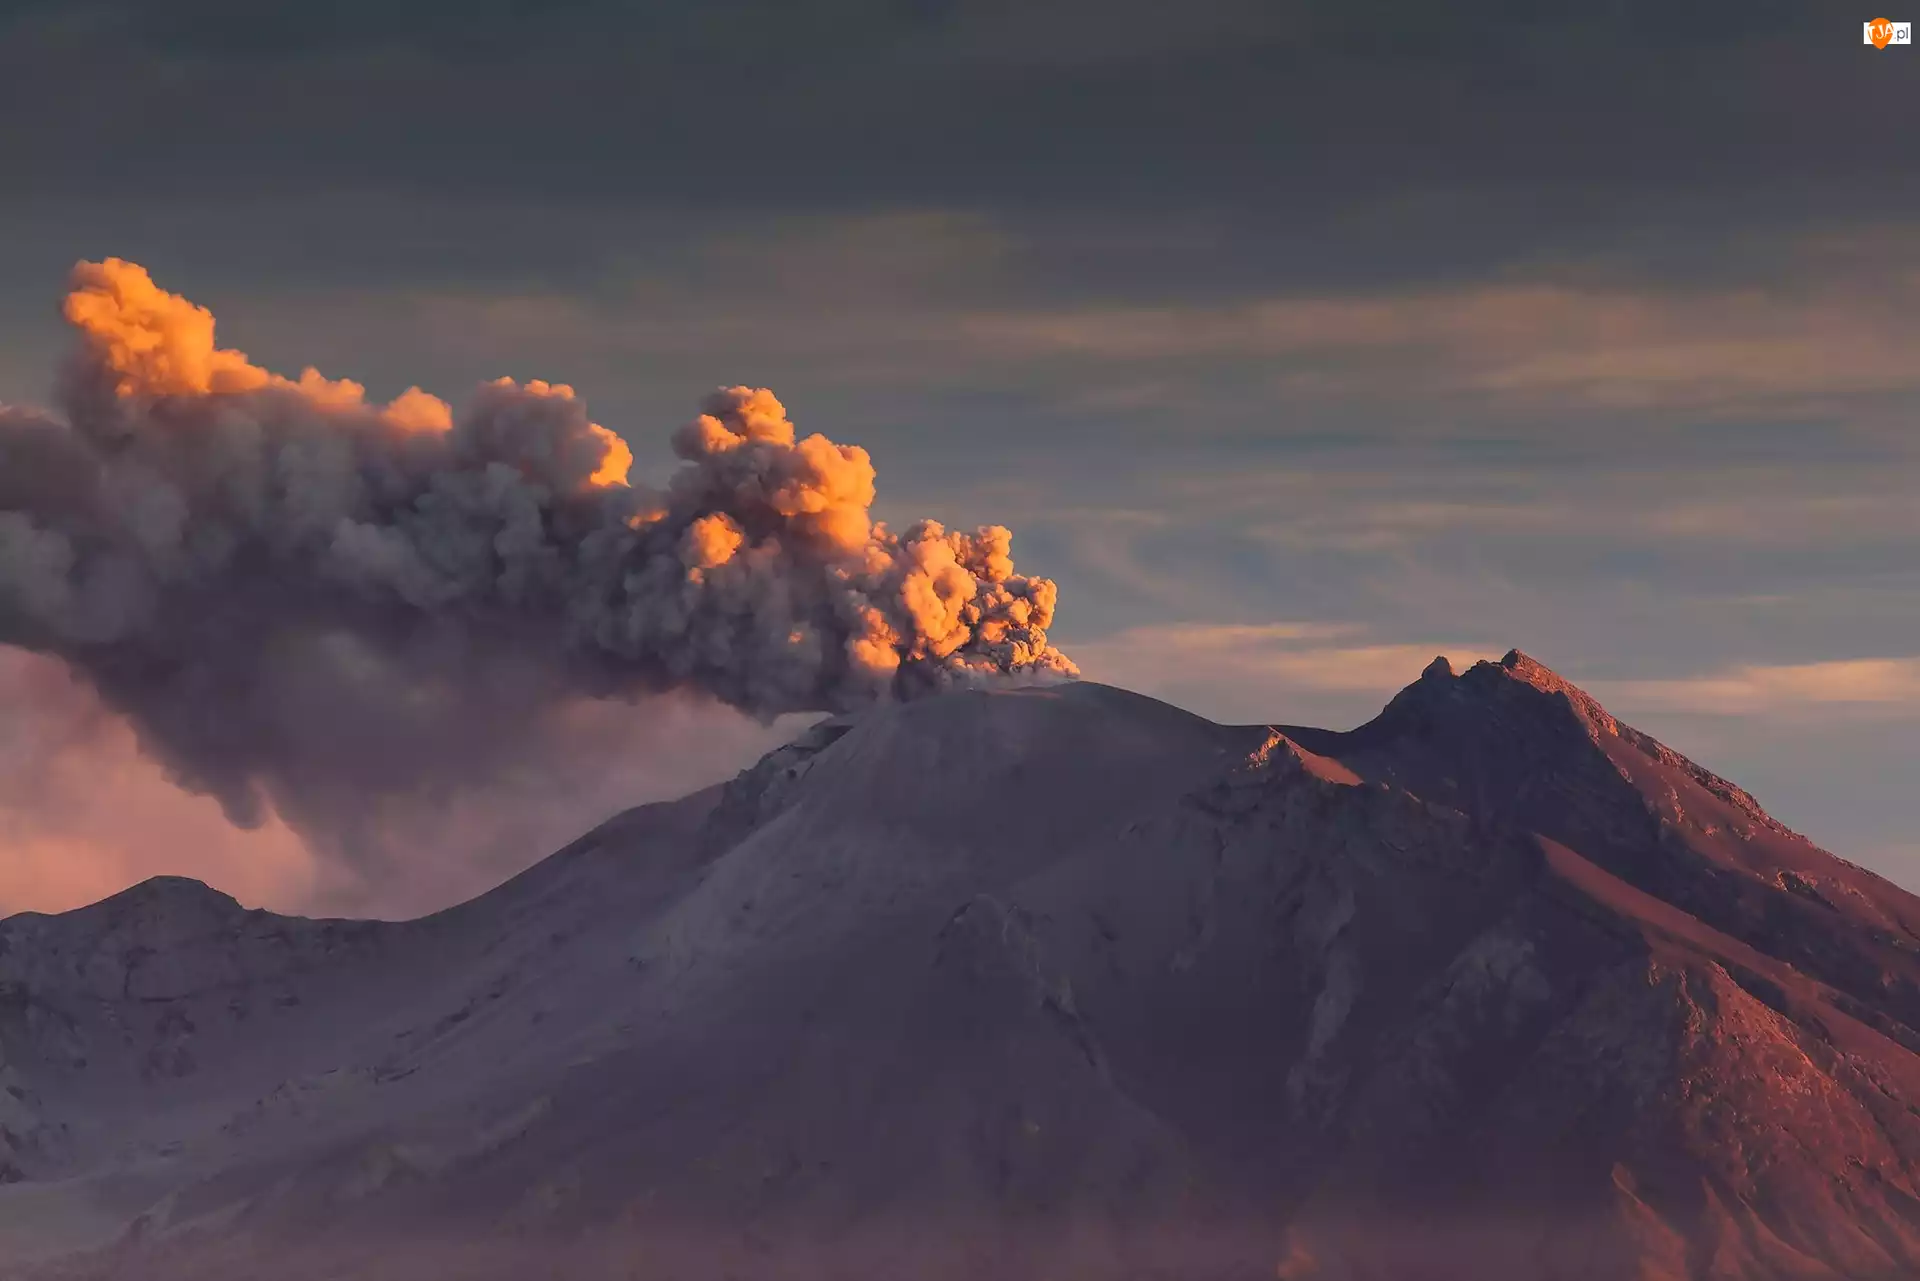 Dym, Wulkan, Erupcja